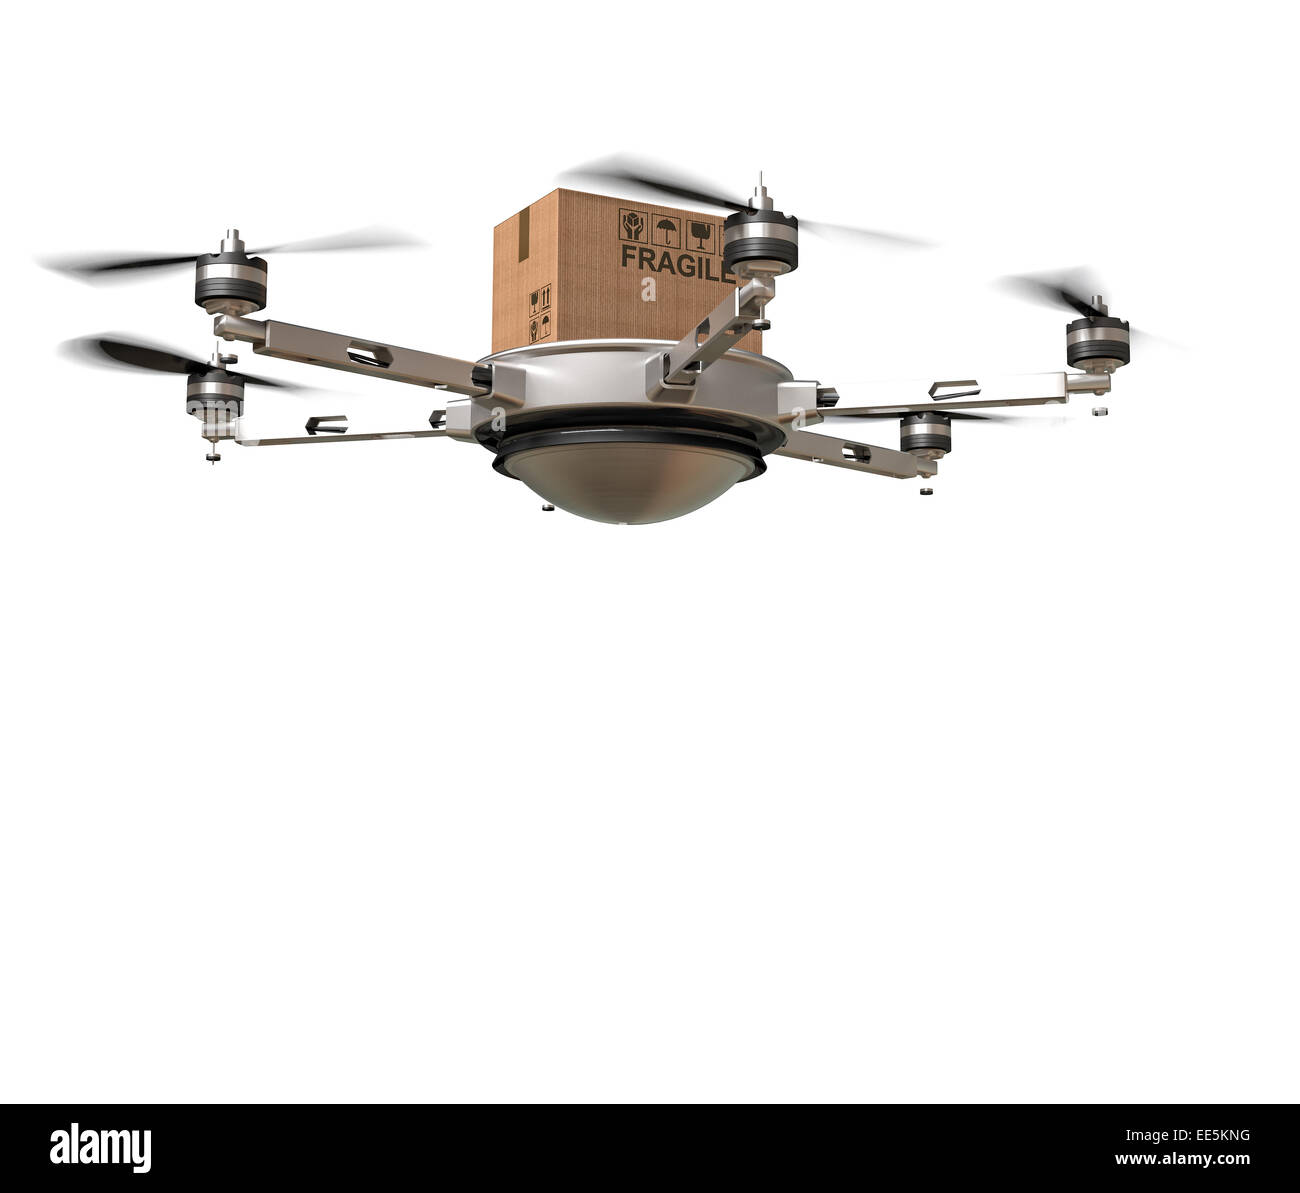 Immagine 3d di futuristico drone di consegna Foto Stock